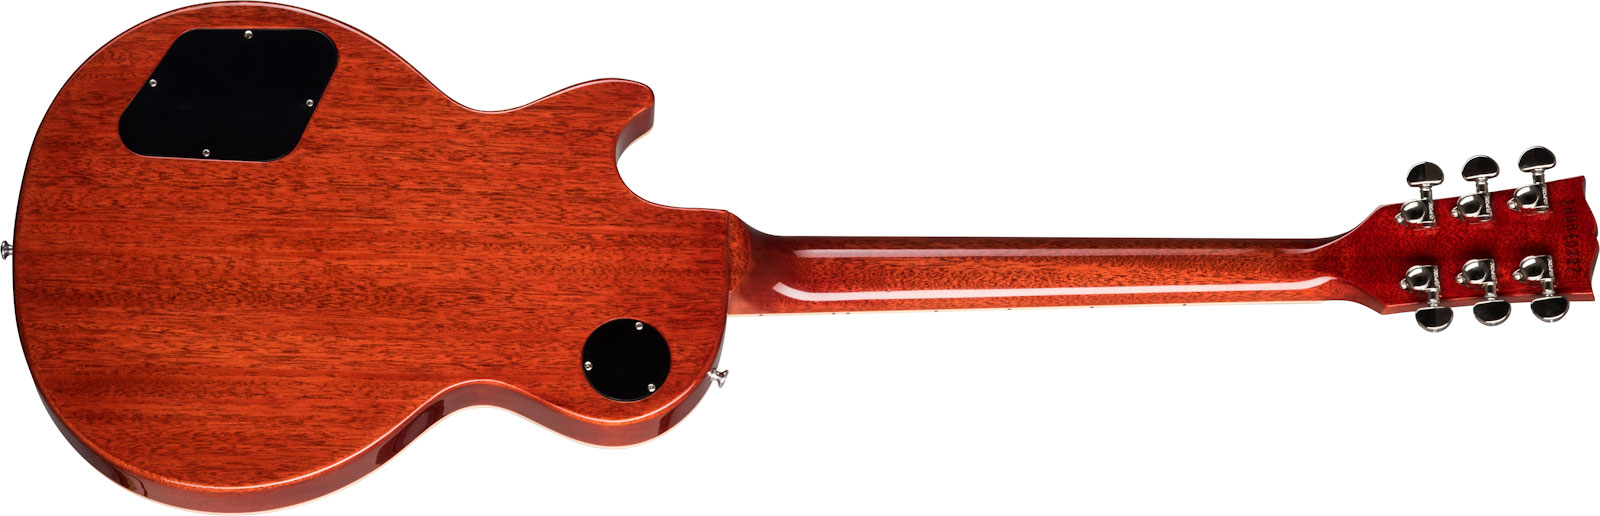 Gibson Les Paul Standard 60s 2h Ht Rw - Iced Tea - Enkel gesneden elektrische gitaar - Variation 2